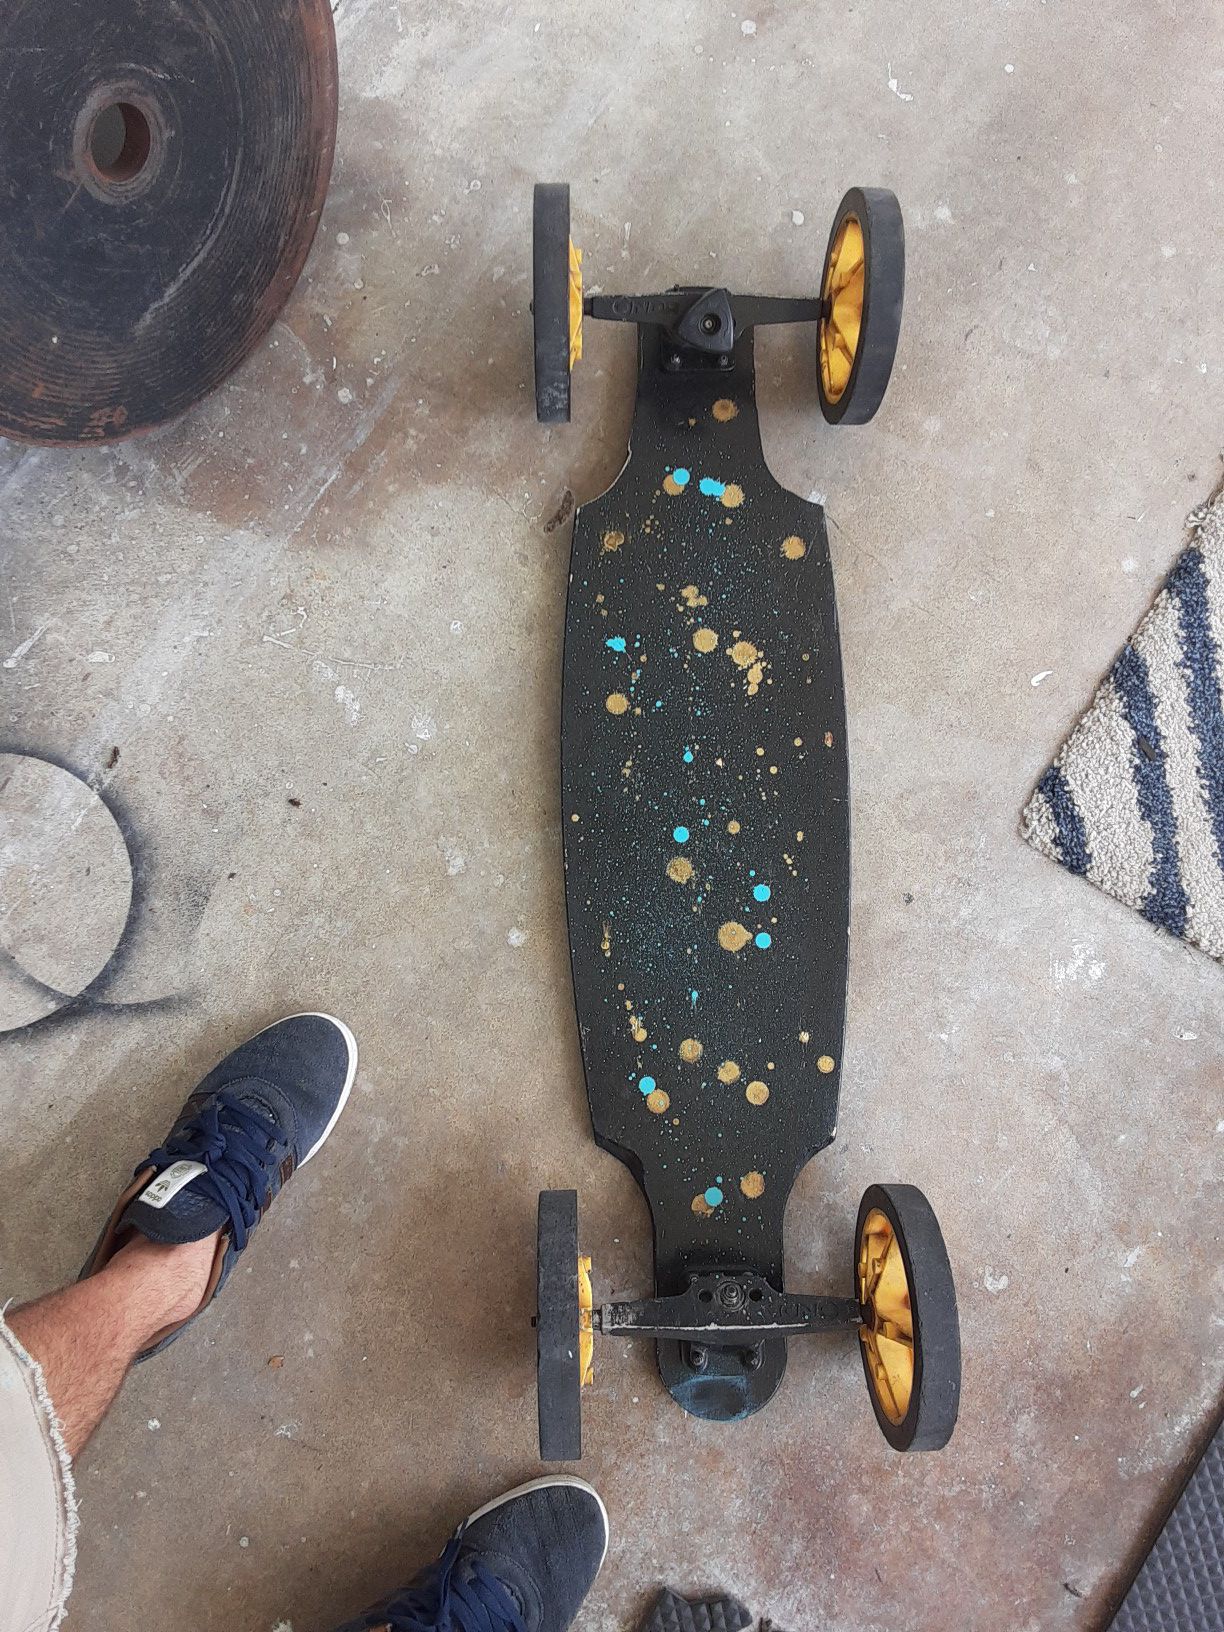 Skateboard 40$obo